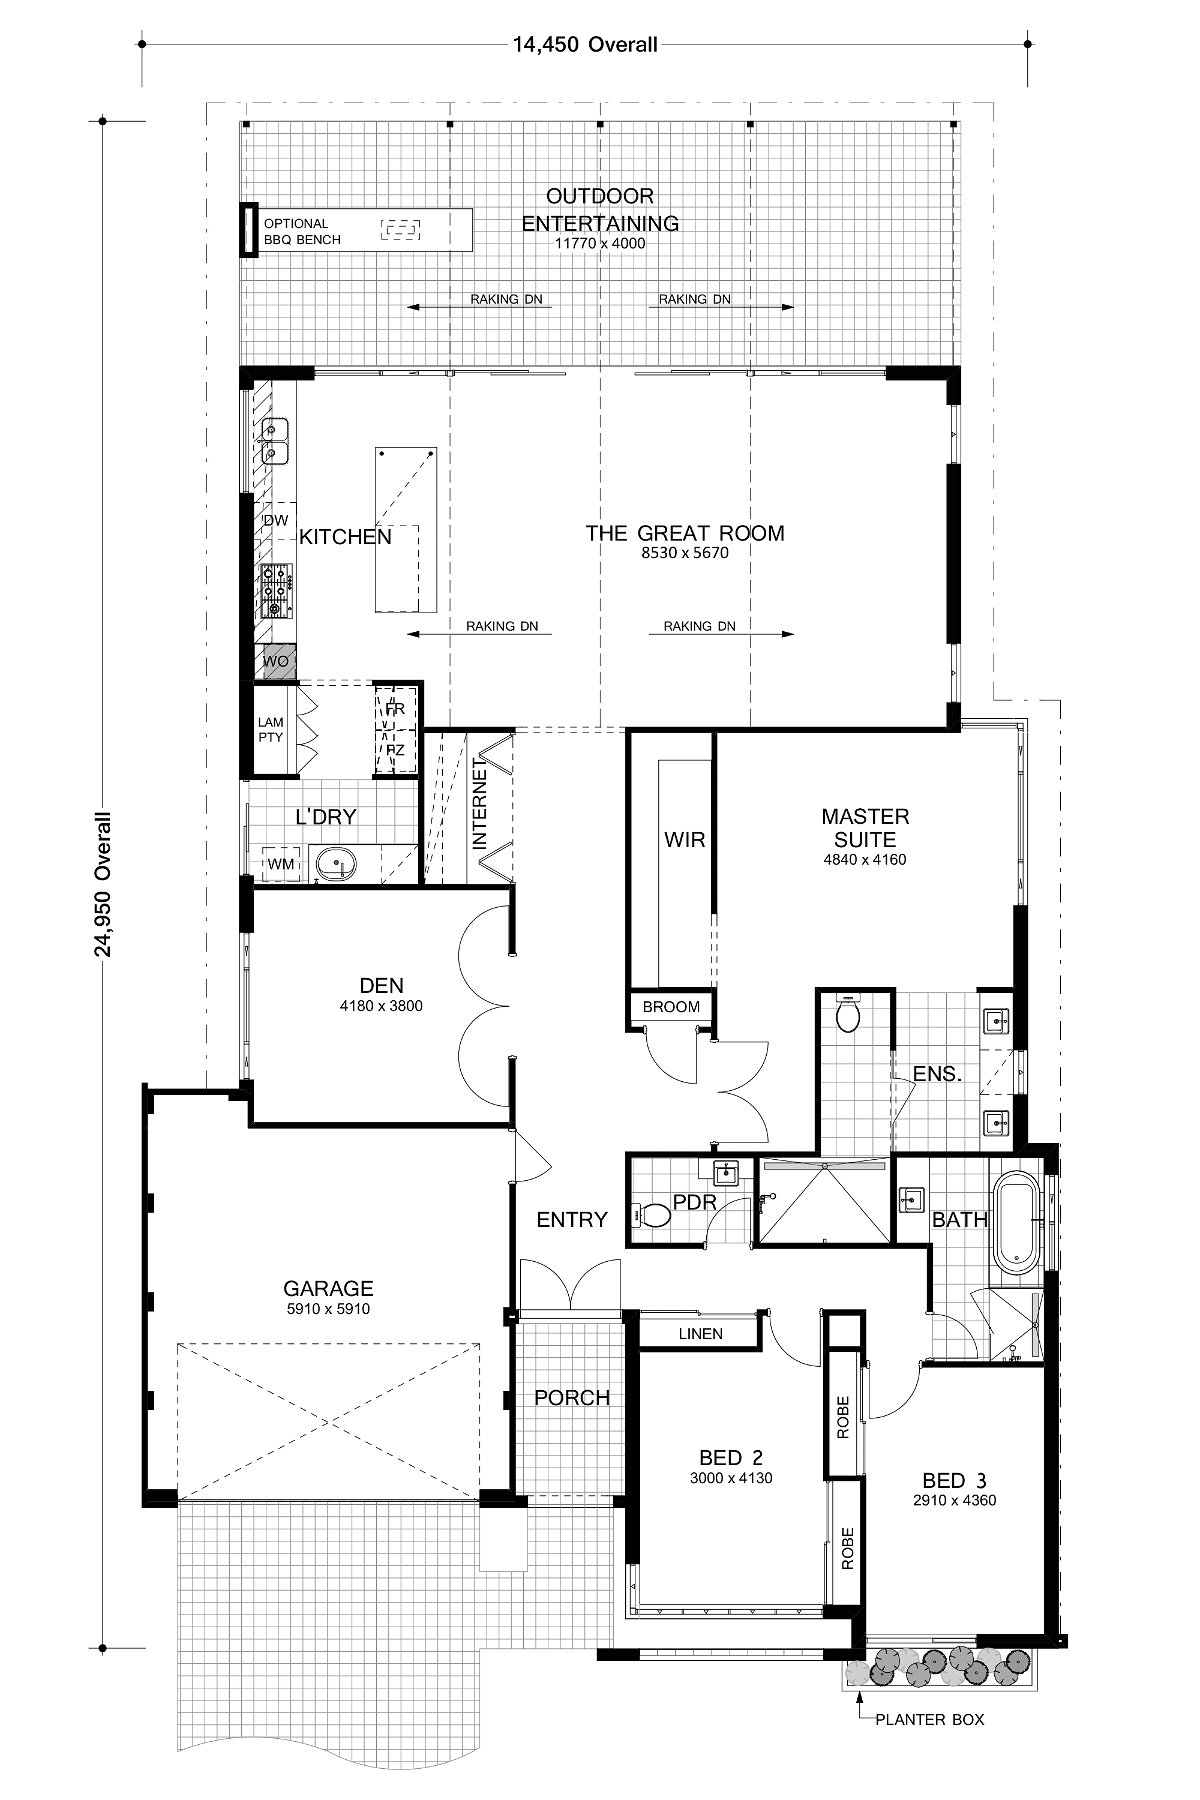 Residential Attitudes - Fresno - Floorplan - Fresno Floorplan Website